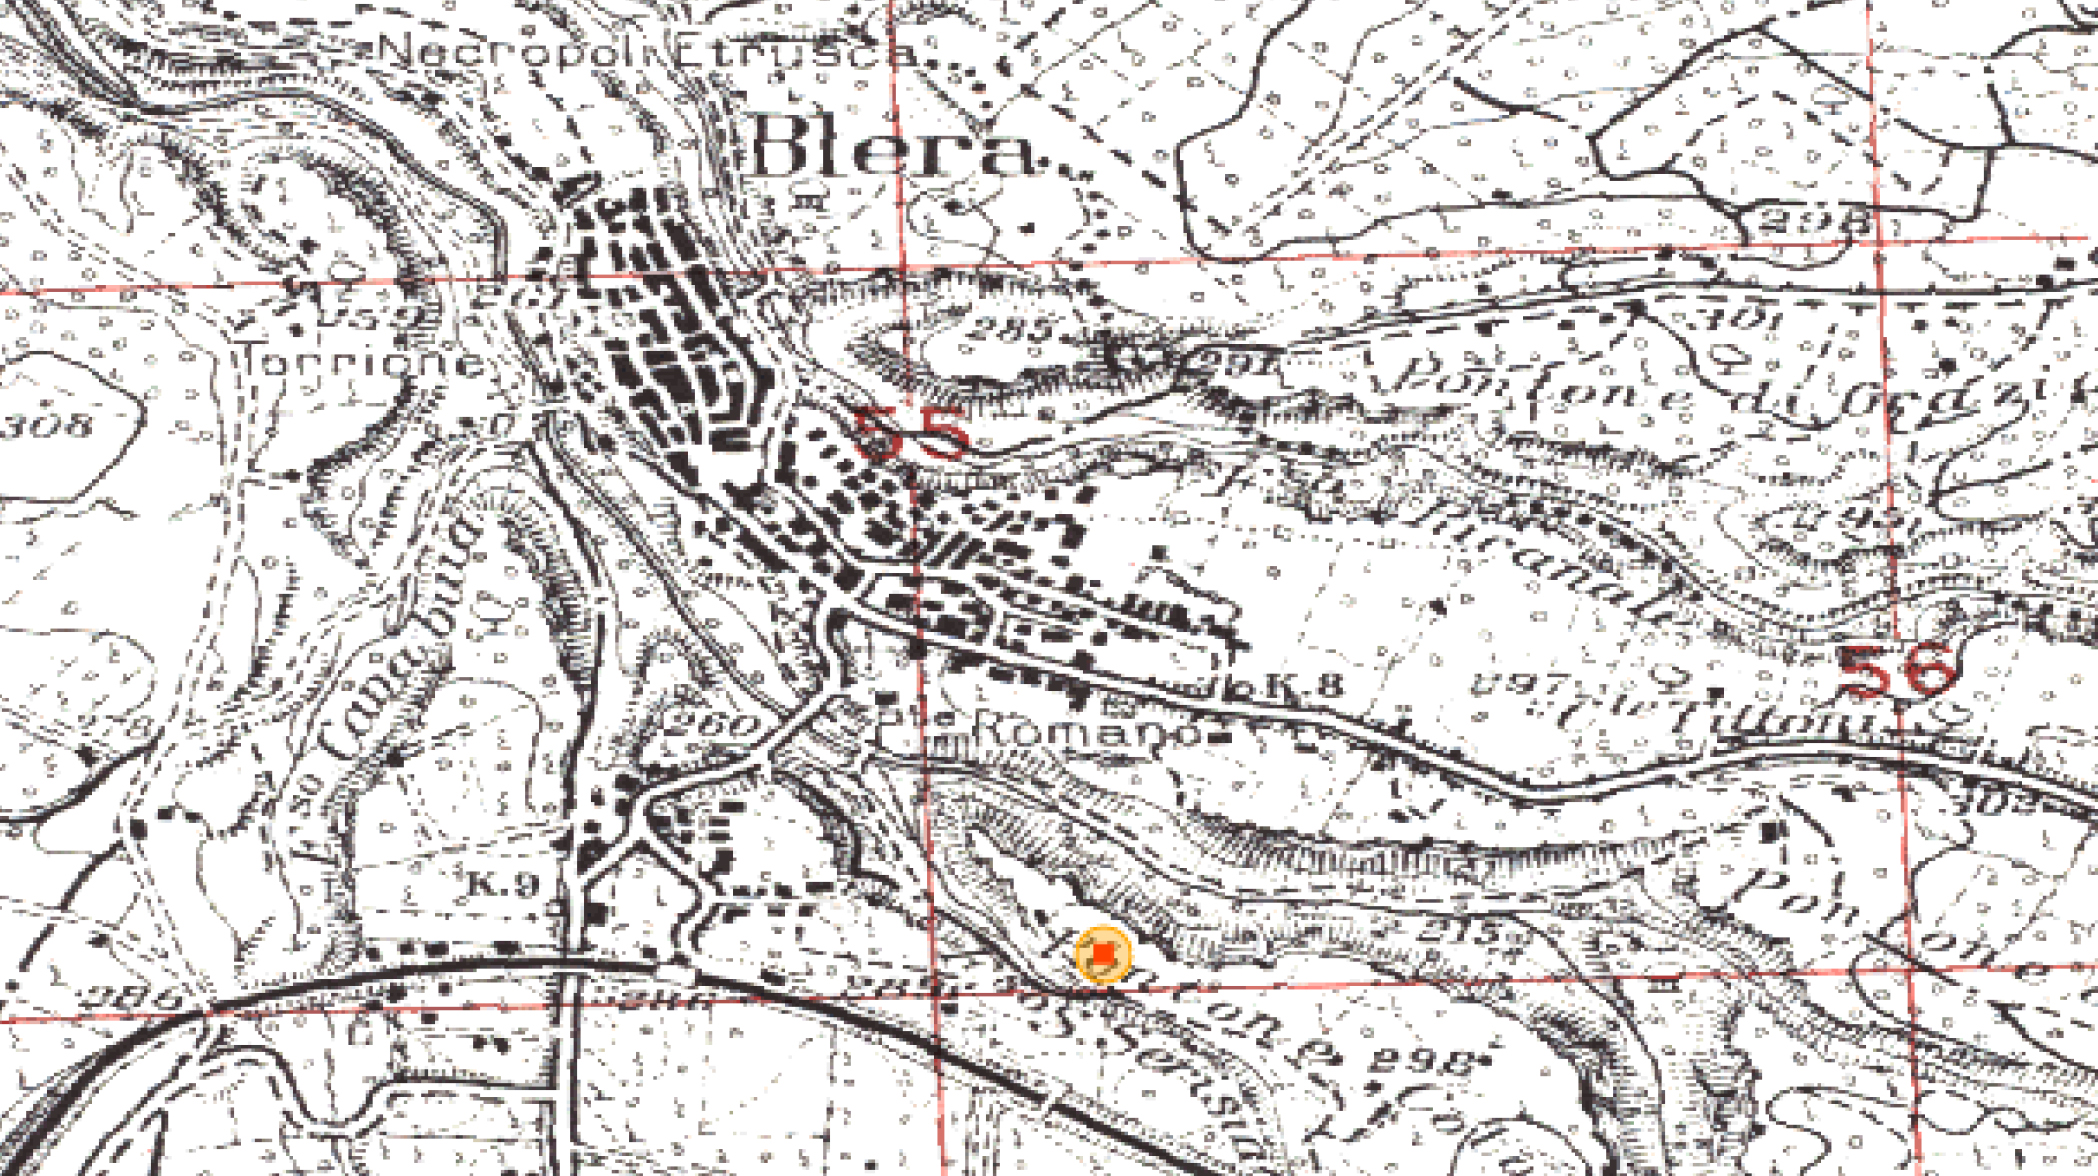 PONTONE COLONNA (insediamento, insediamento naturalmente difeso) - Blera (VT)  (Bronzo medio 1-2; Bronzo medio 3)